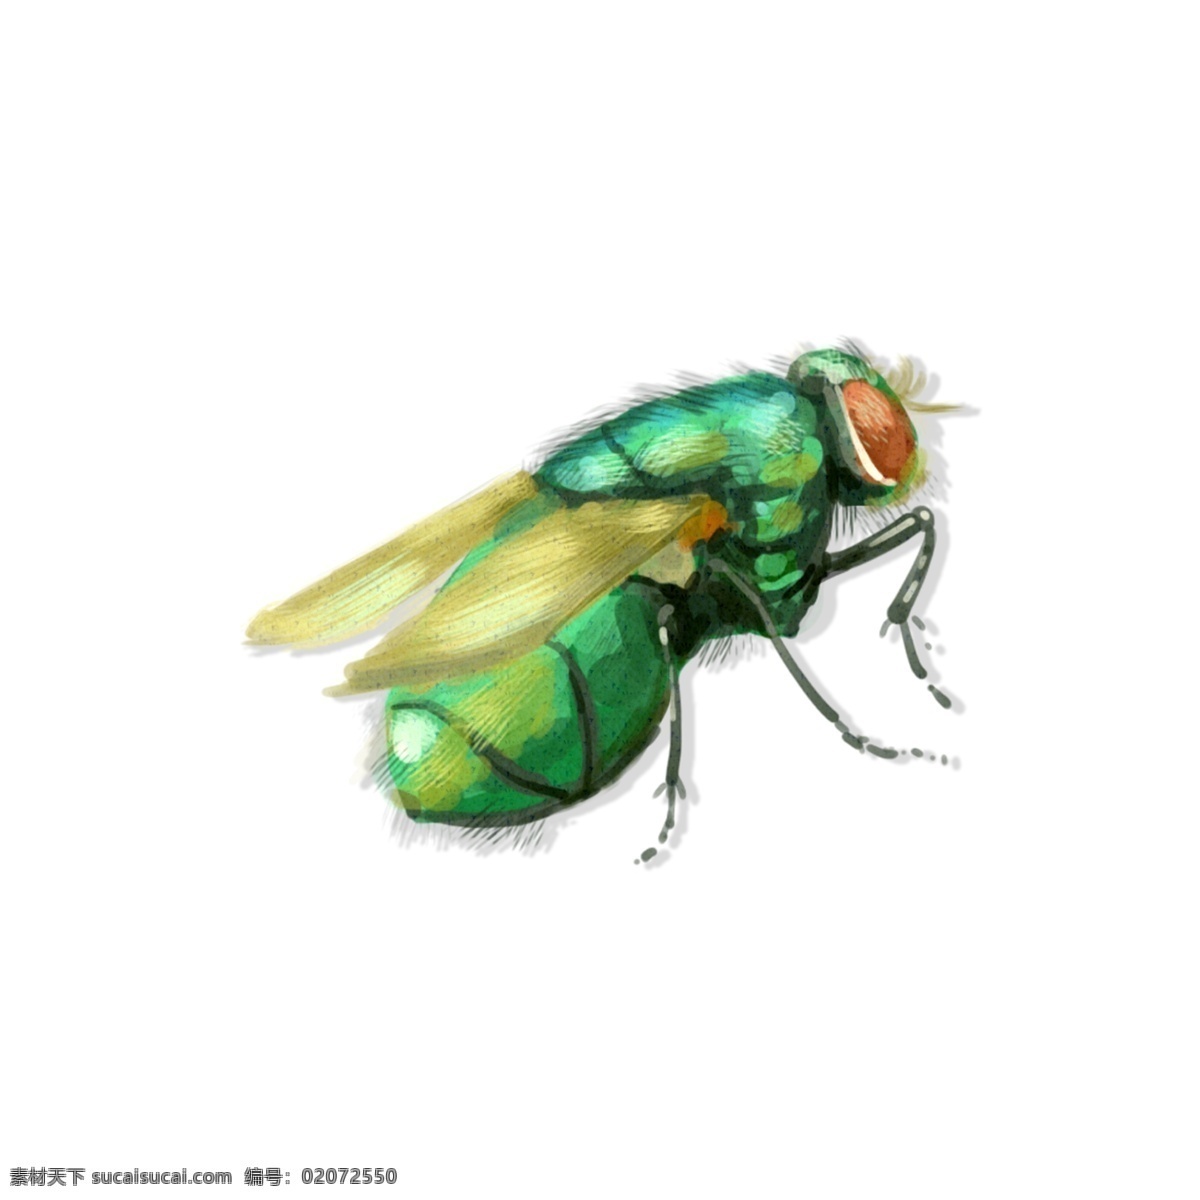 手绘 中国 昆虫 风 苍蝇 飞行 虫子 动物 透明 底 中国风 简约 飞行虫子 治愈